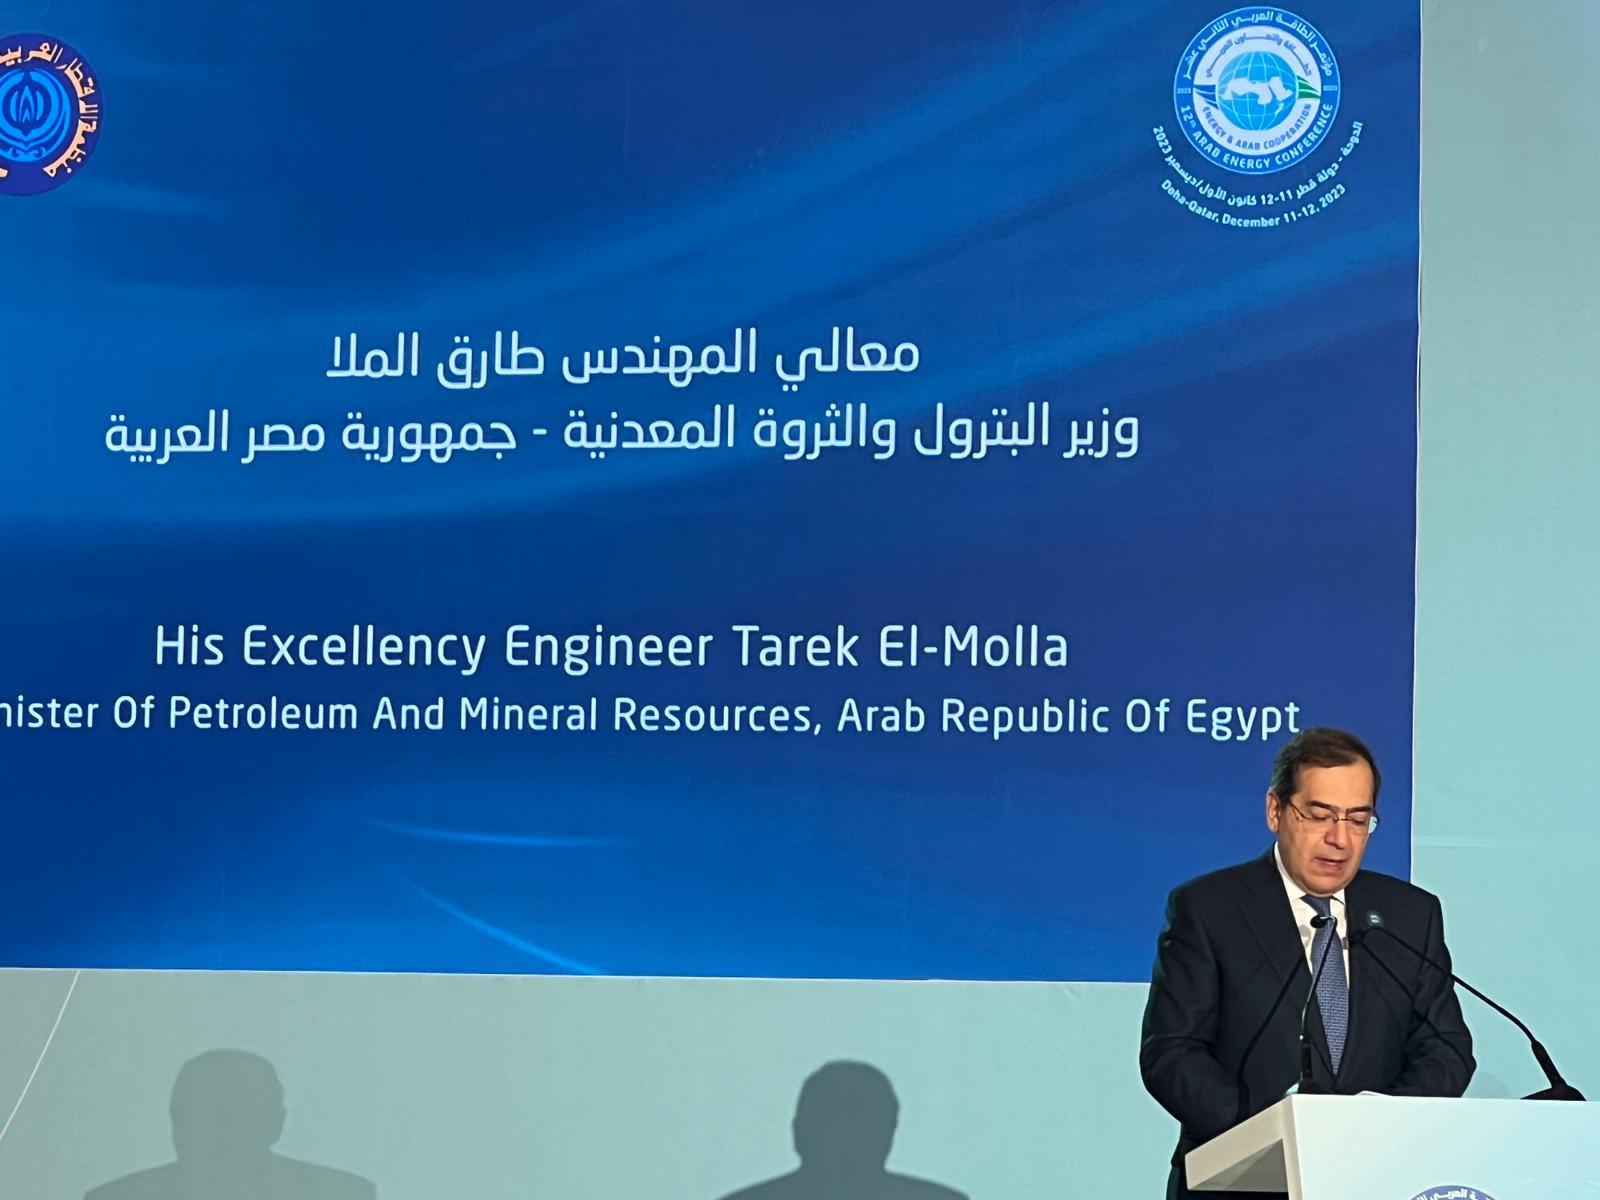  وزير البترول خلال مؤتمر الطاقة العربي الثاني عشر 